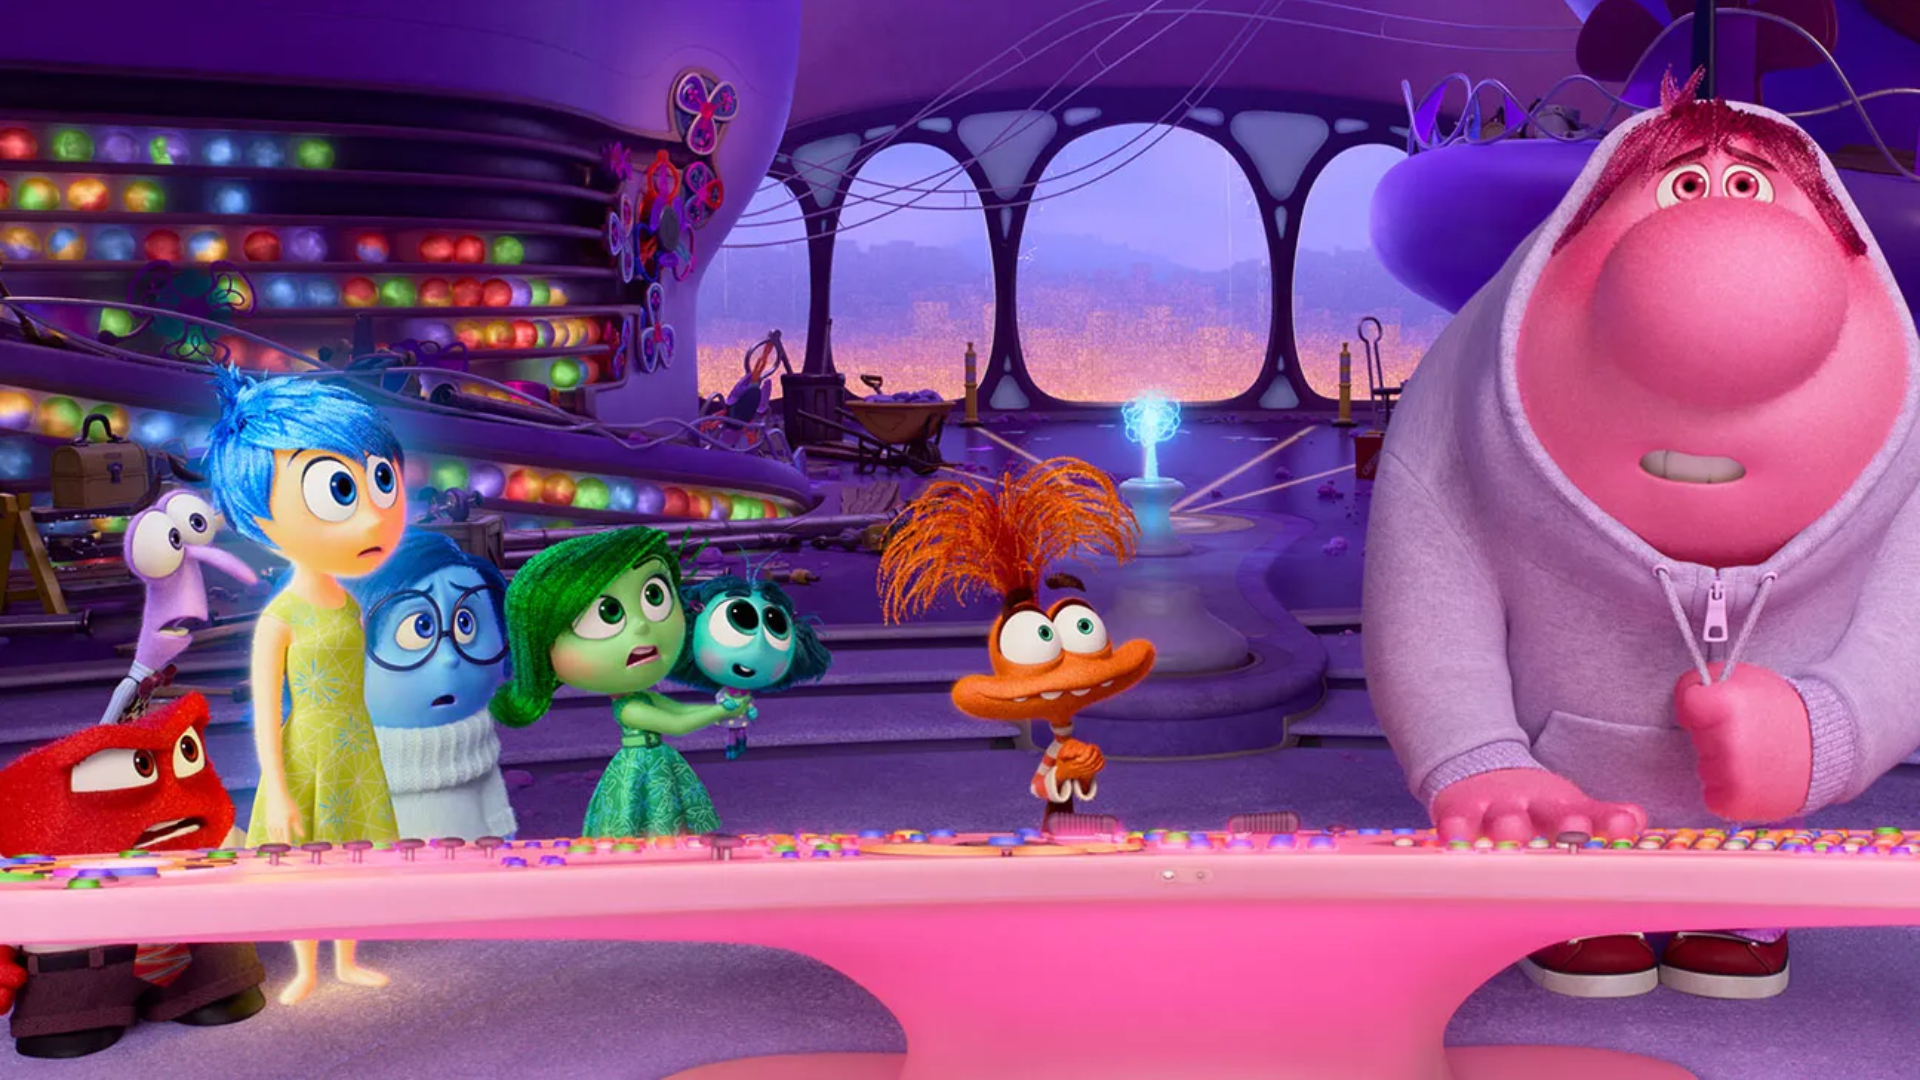 Inside Out 2 stał się najlepiej zarabiającym filmem animowanym w historii: wyprzedził Frozen 2, który utrzymał rekord od 2019 roku